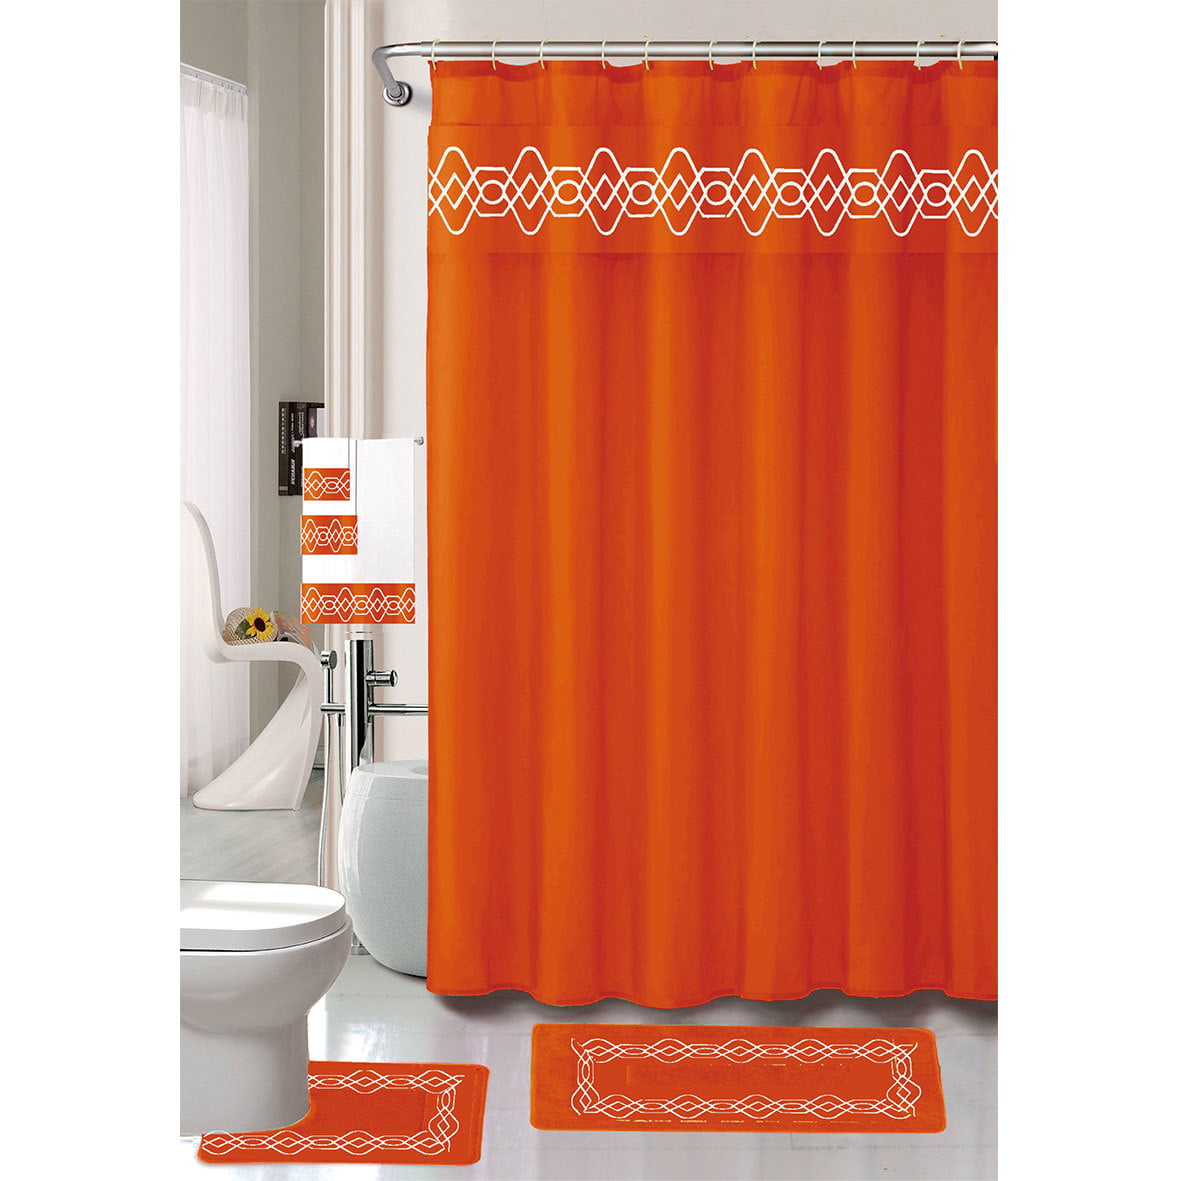 18 Piece Bathroom Shower Mat Curtain Set Shower Hooks + Bat Mat + Towel Set 